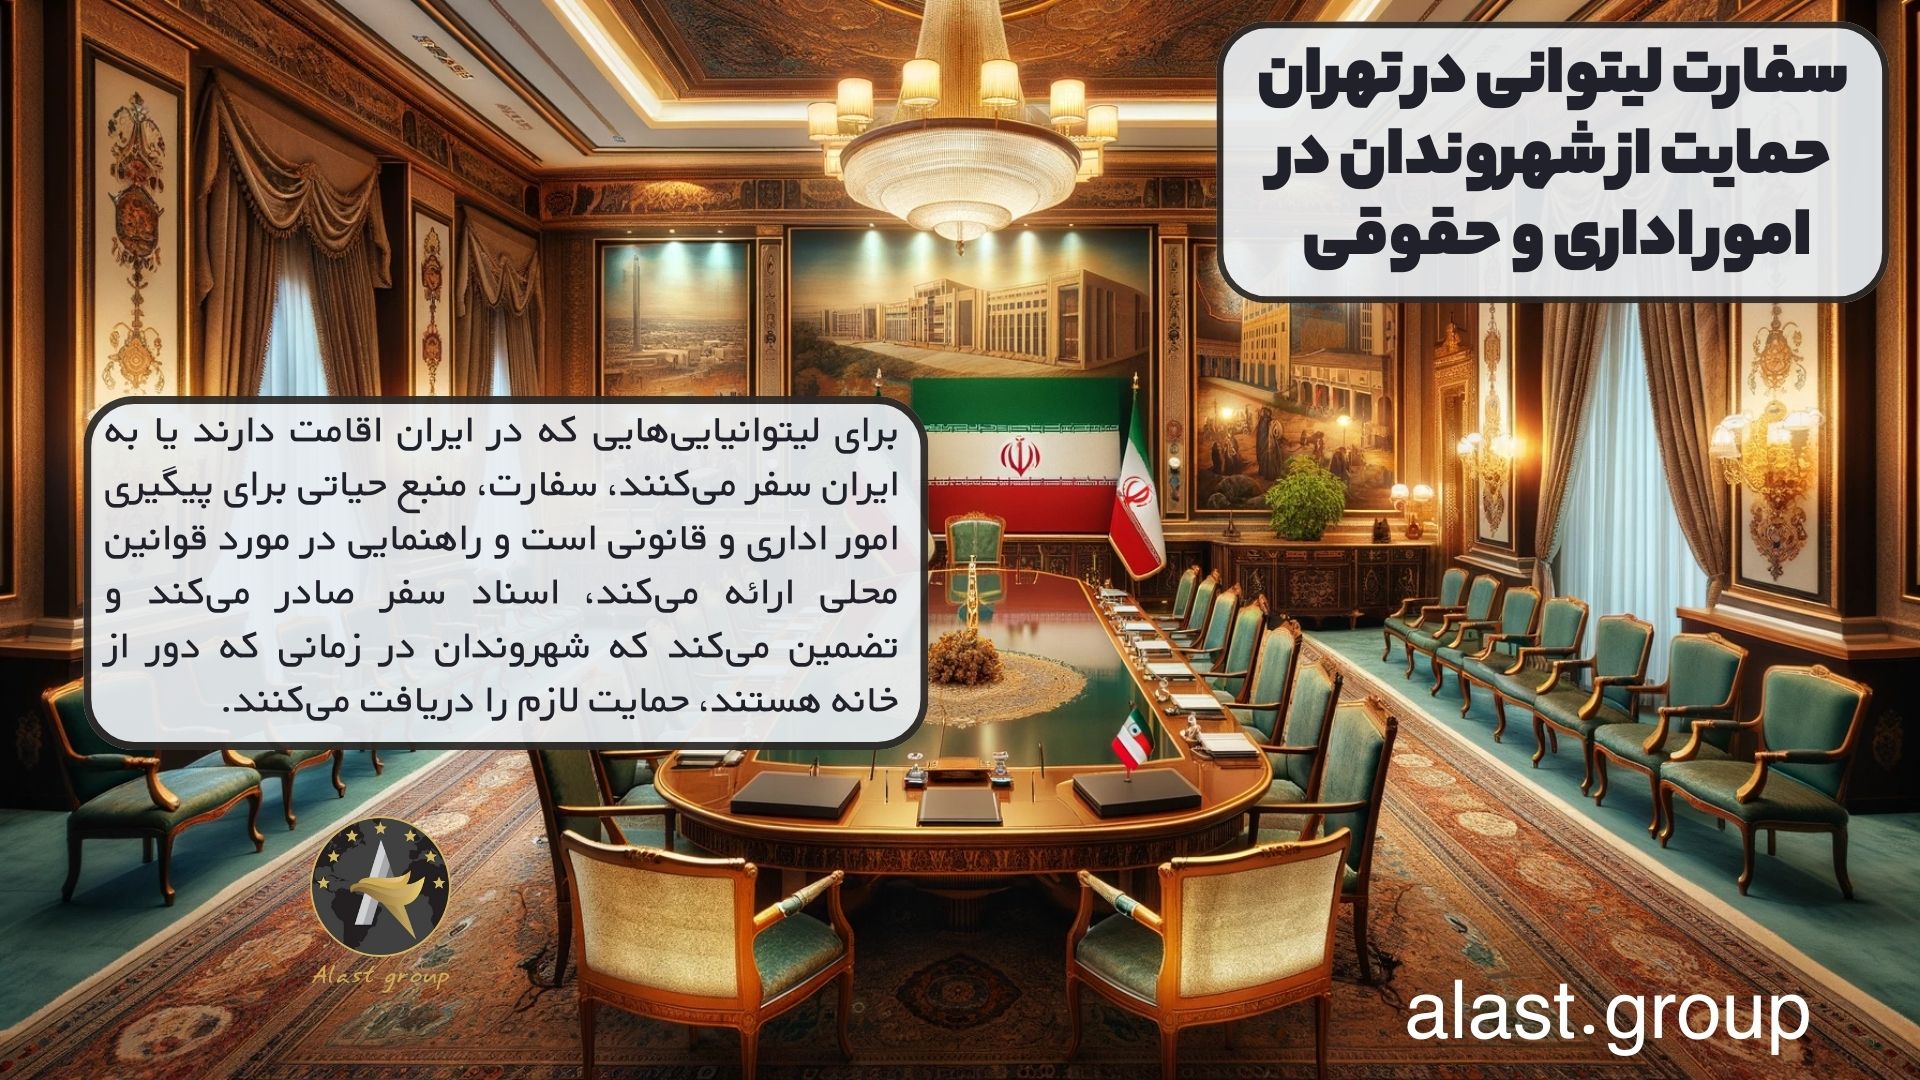 سفارت لیتوانی در تهران حمایت از شهروندان در امور اداری و حقوقی